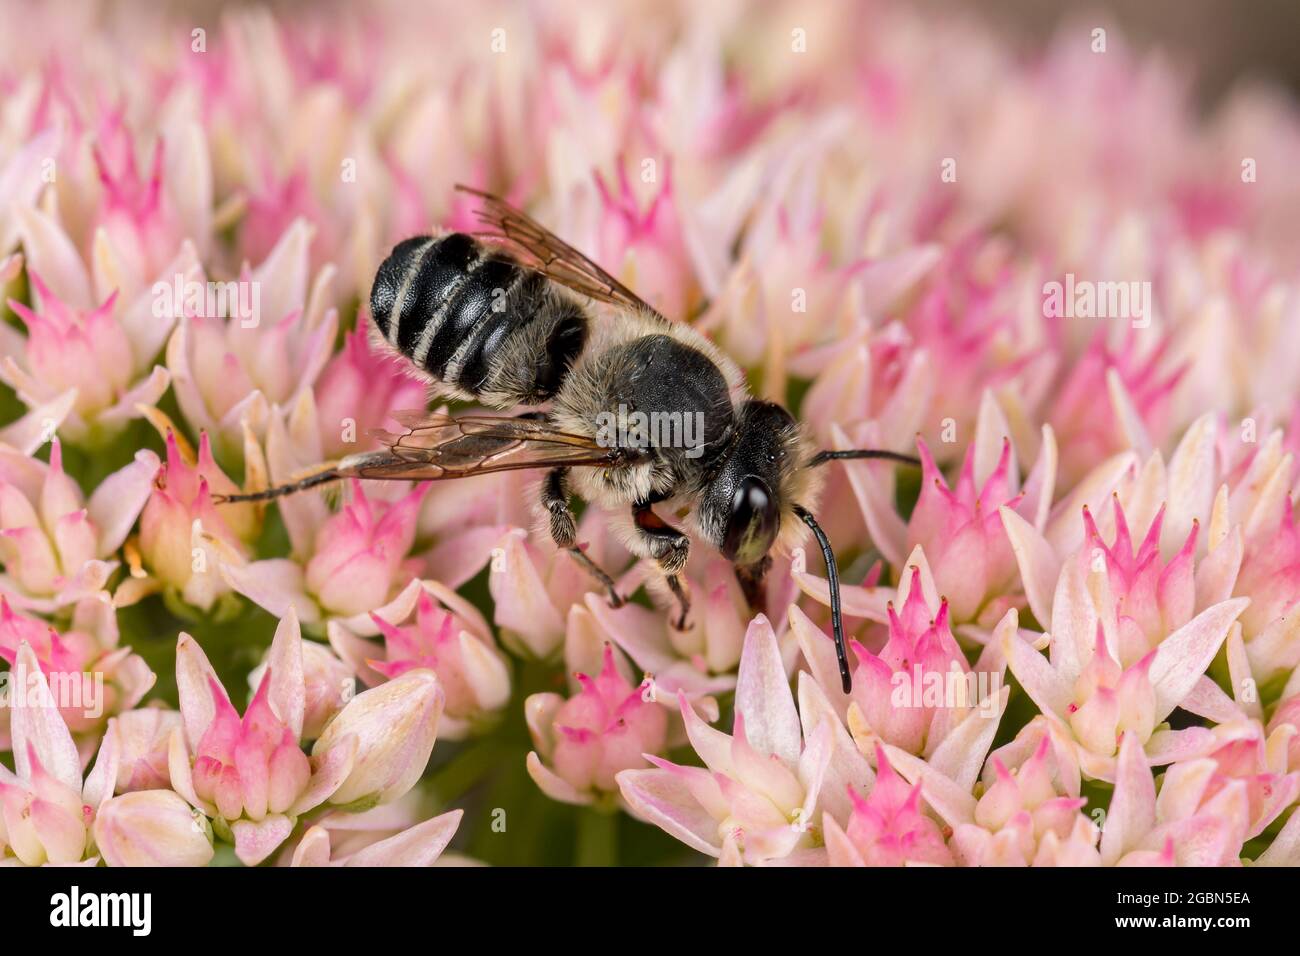 WESTERN Leafcutter Biene auf Sedum Blume. Schutz von Insekten und Wildtieren, Erhaltung von Lebensräumen und Gartenkonzept für Gartenblumen Stockfoto